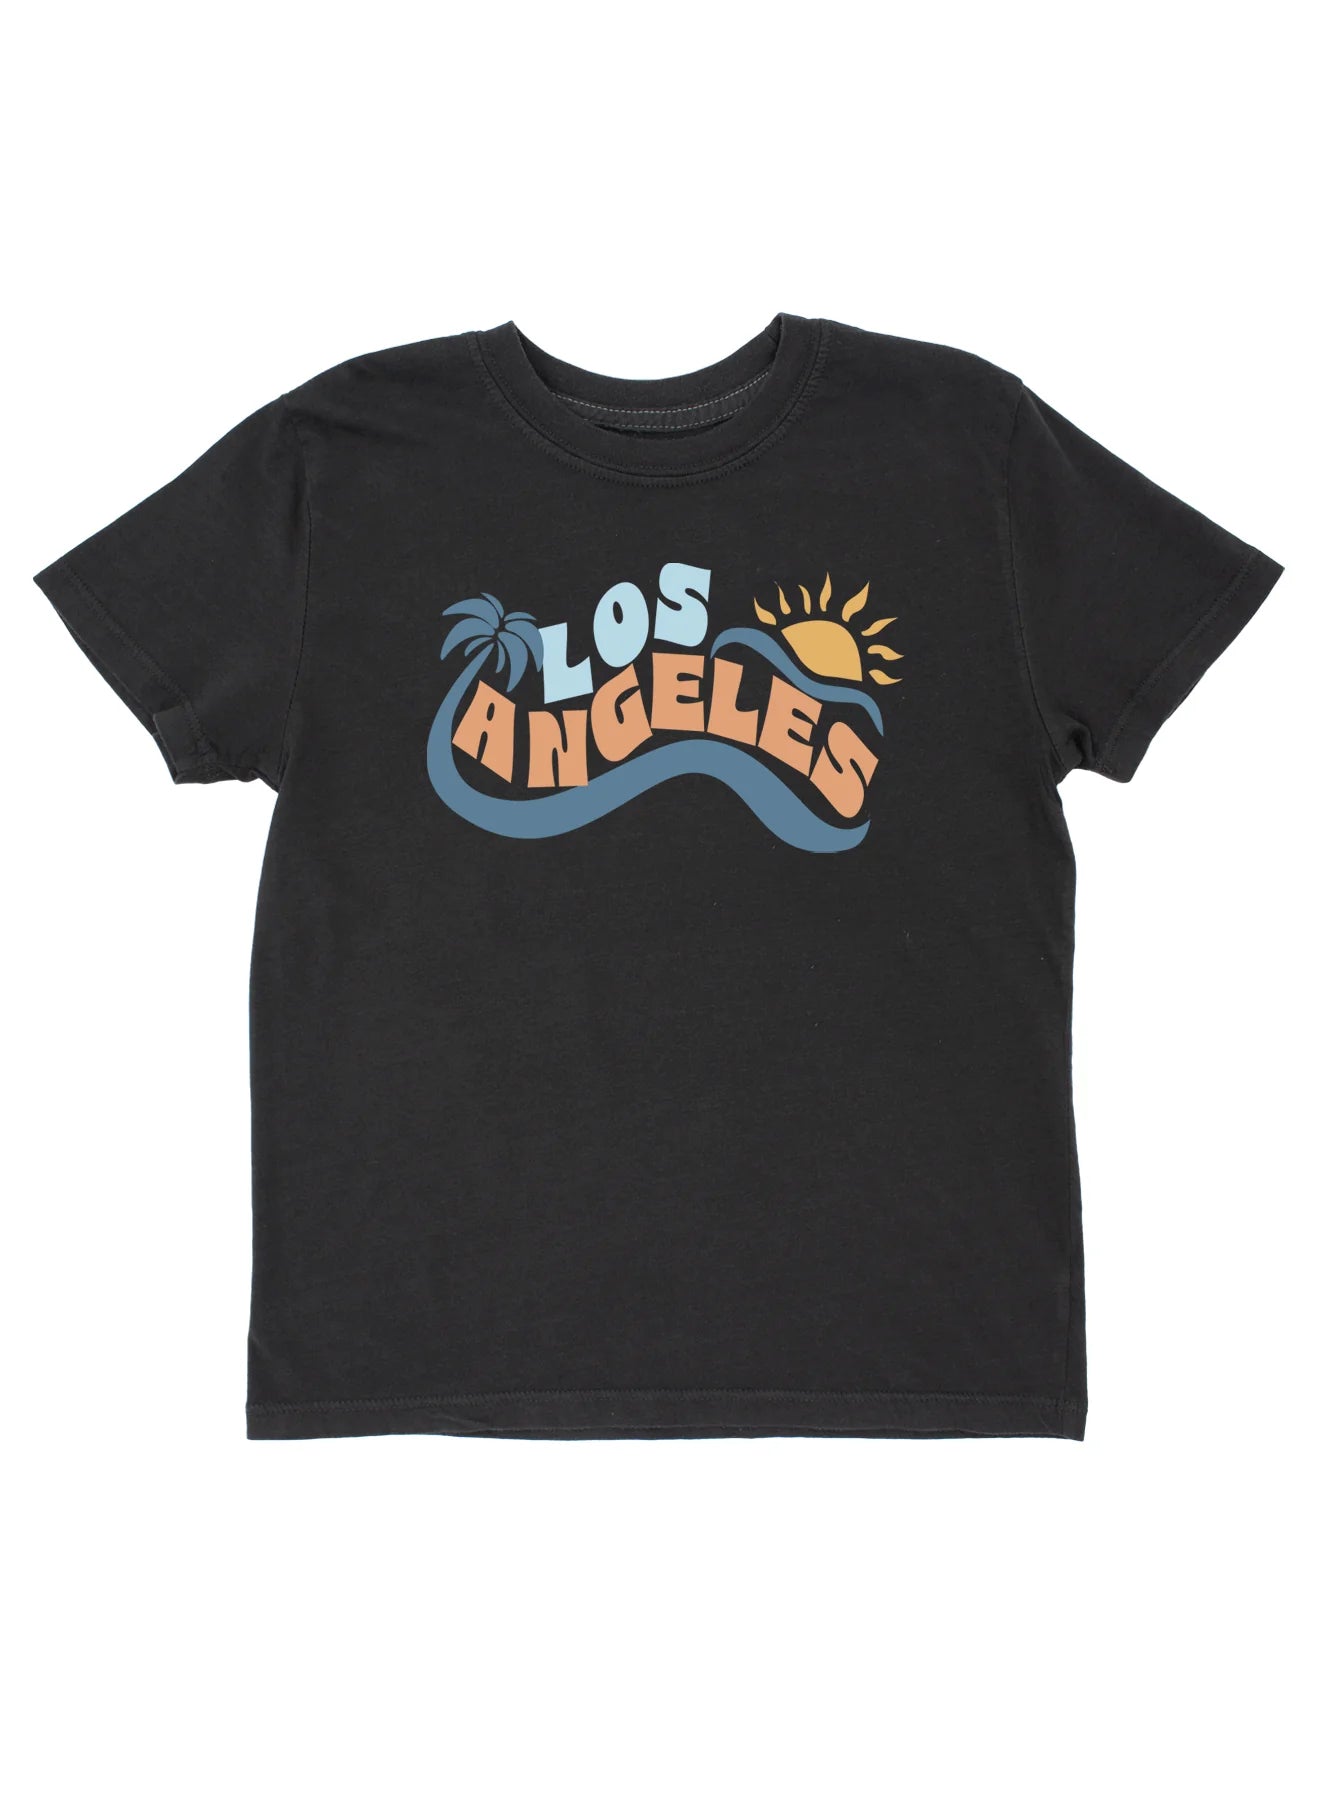 KIDS BLACK LOS ANGELES VINTAGE TEE